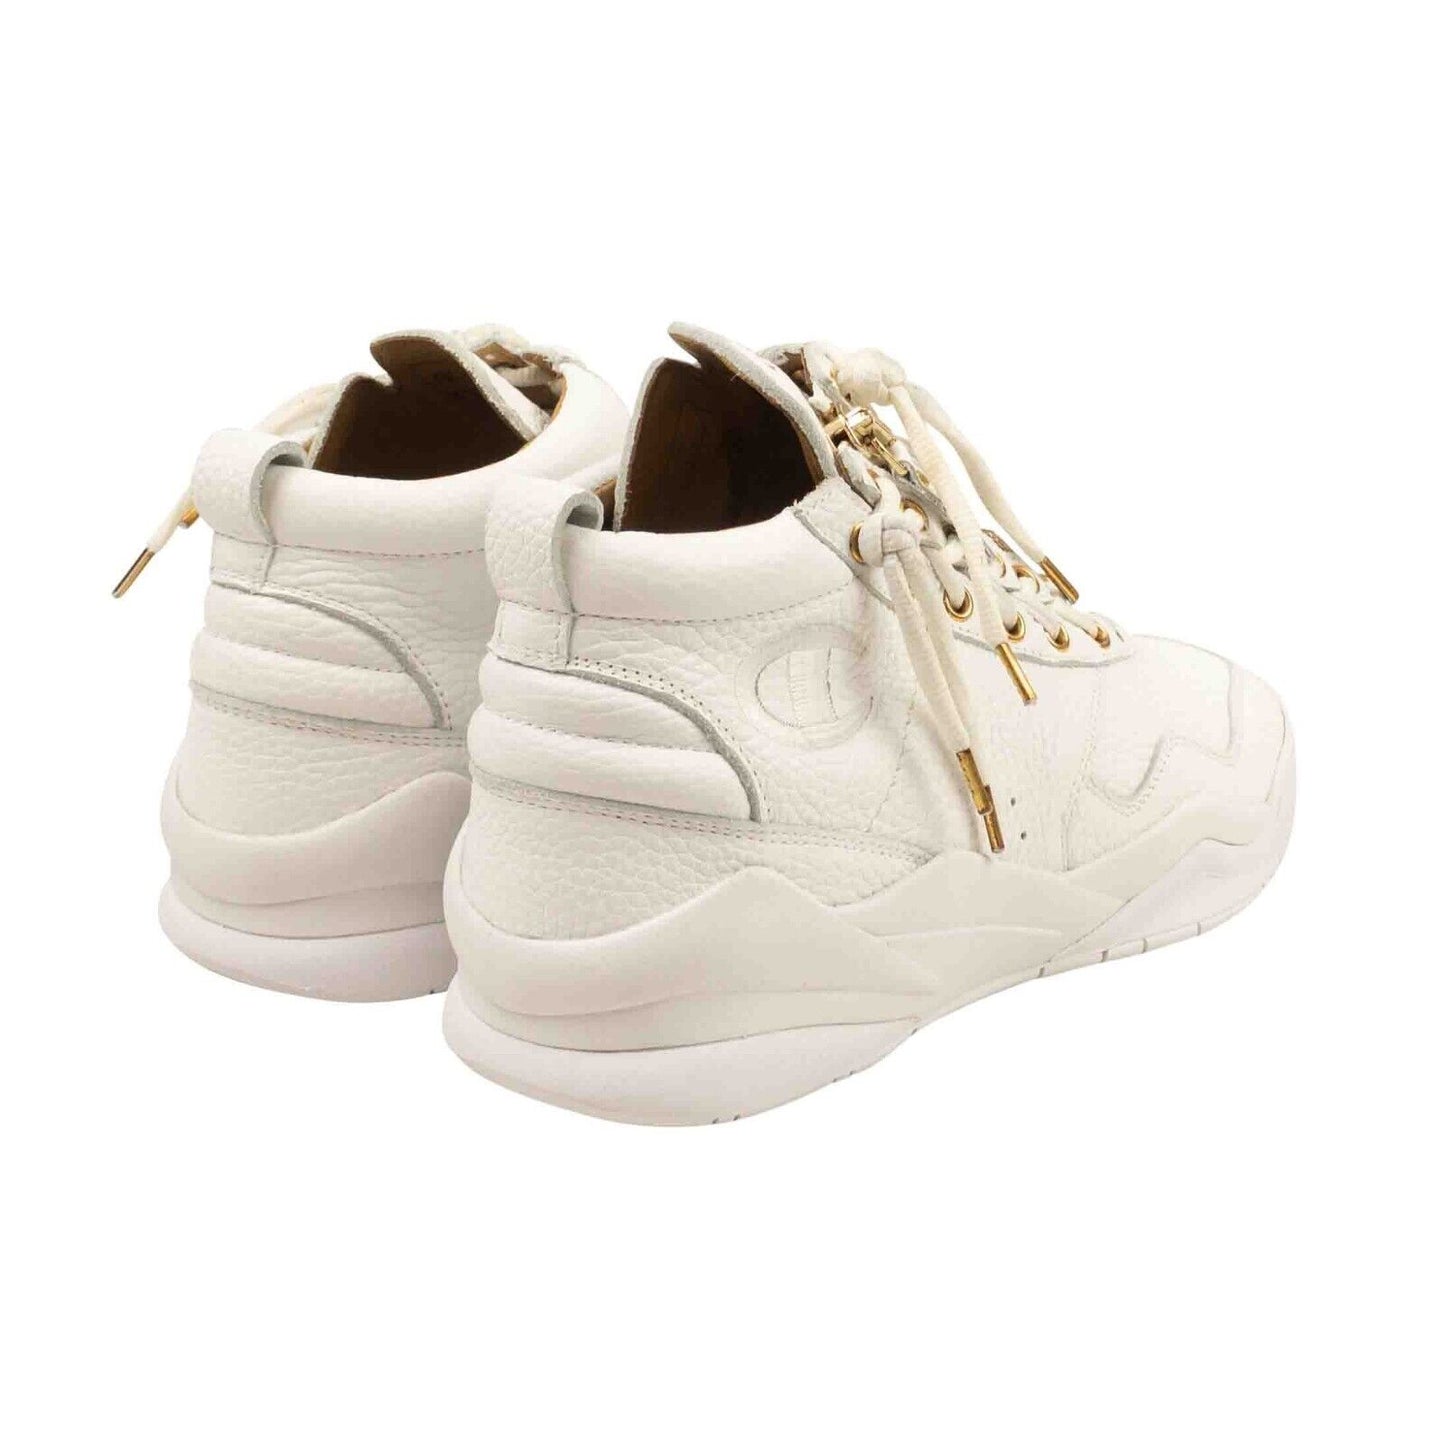 Casbia Awol Atlanta Sneakers - White